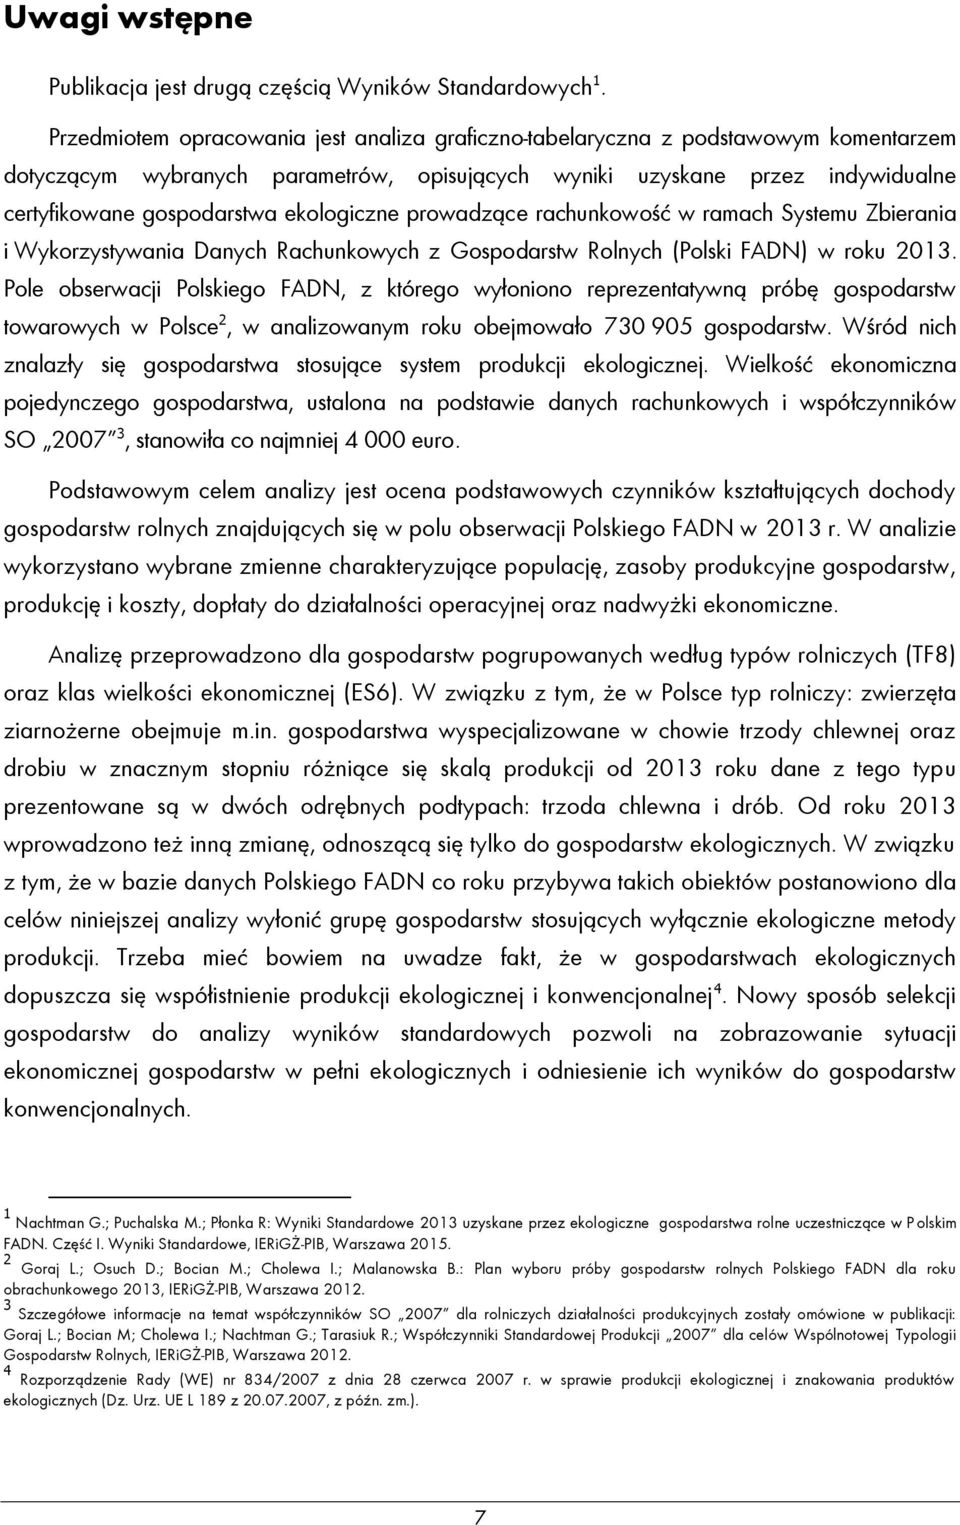 ekologiczne prowadzące rachunkowość w ramach Systemu Zbierania i Wykorzystywania Danych Rachunkowych z Gospodarstw Rolnych (Polski FADN) w roku 2013.